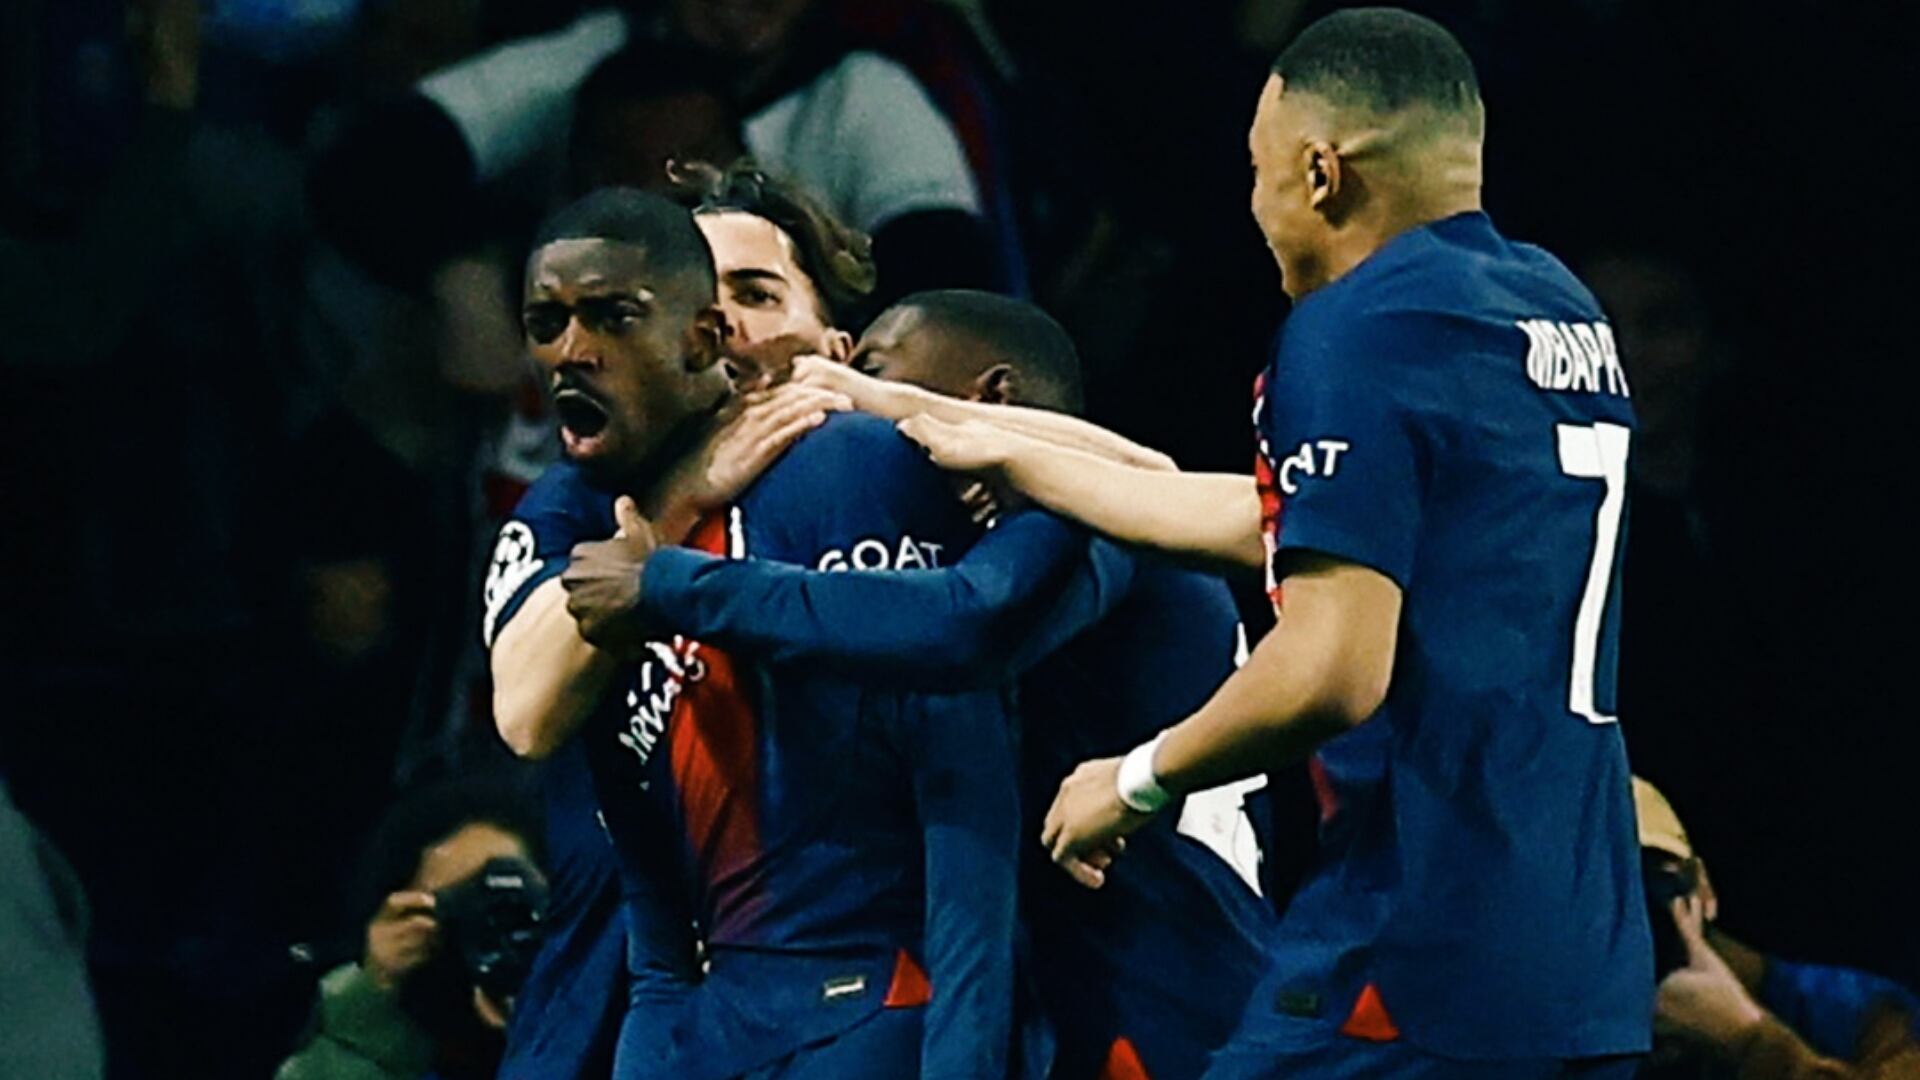 (VIDEO) Dembelé empató para el PSG y se lo celebró en la cara al Barça en Champions